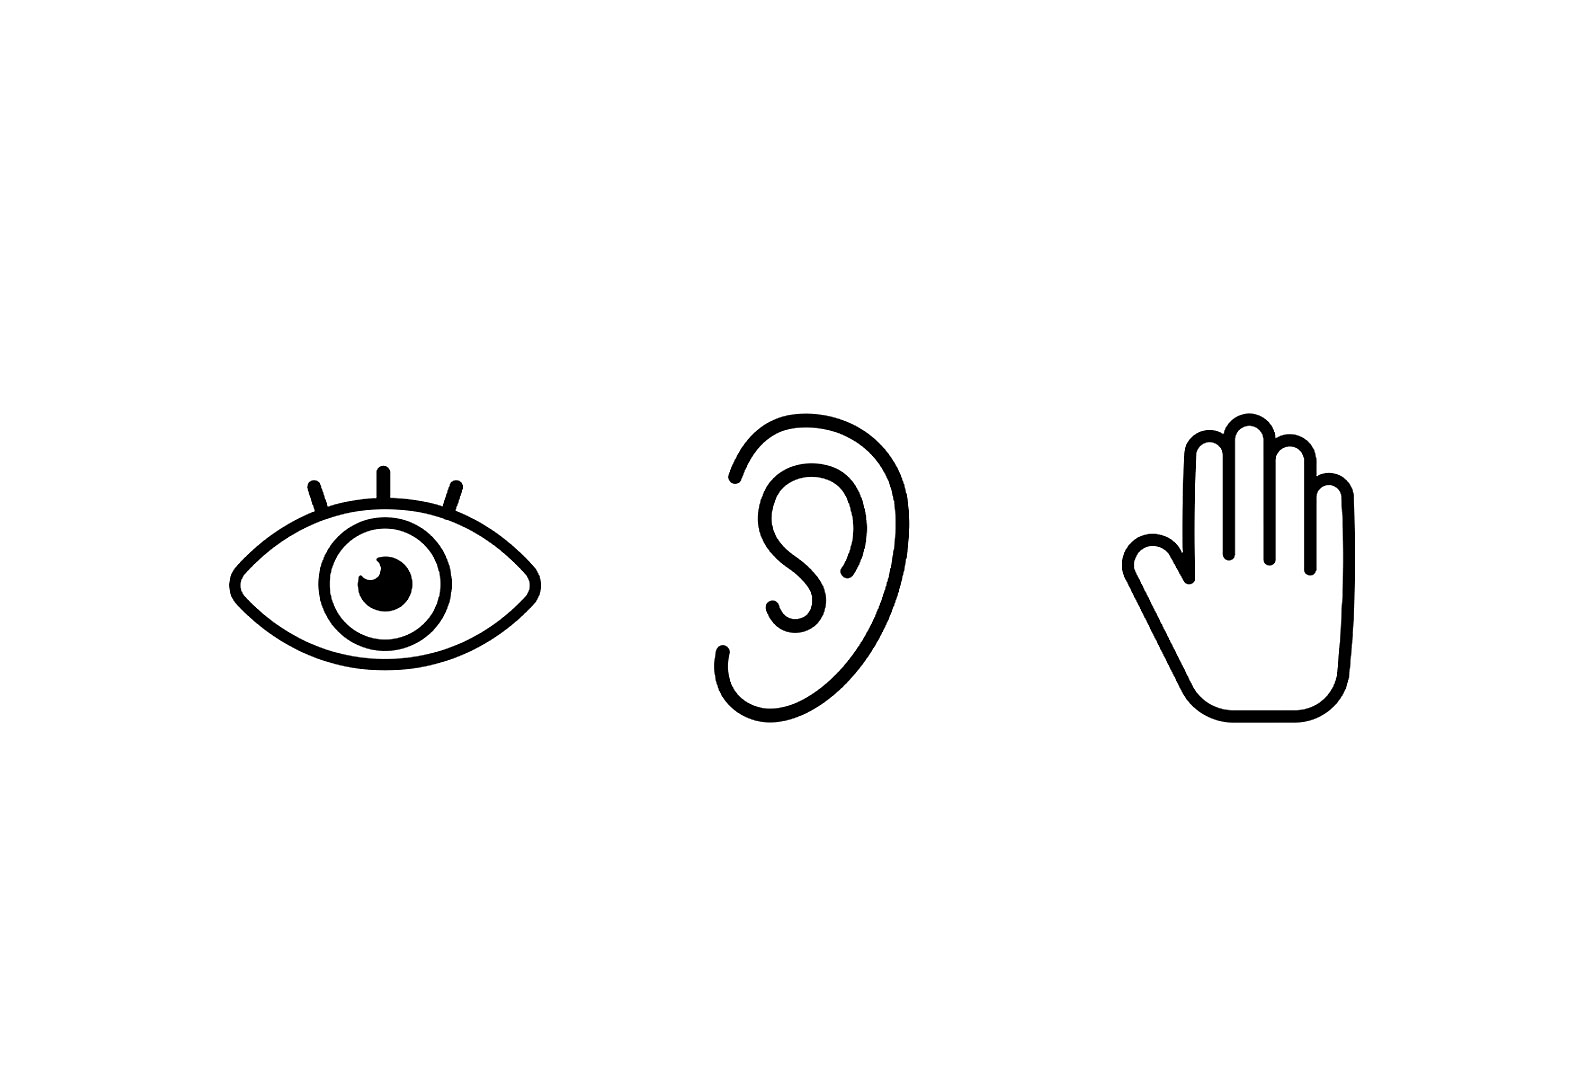 Trois icônes côte à côte : à gauche un œil, au centre une oreille et à droite une main